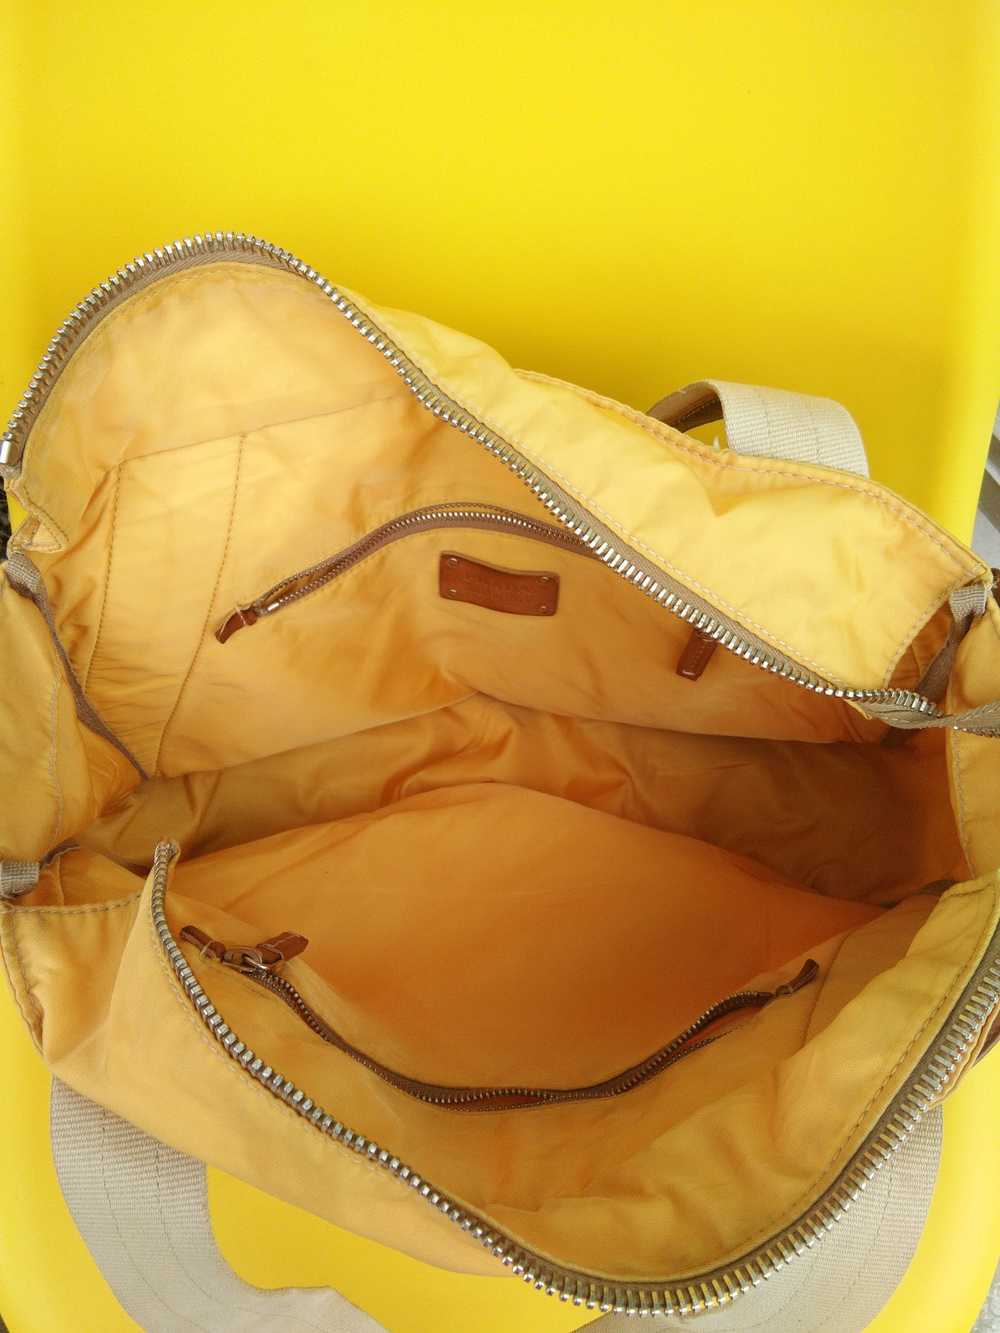 Authentic × Prada Authentic Prada Bag Tote Bag - image 2